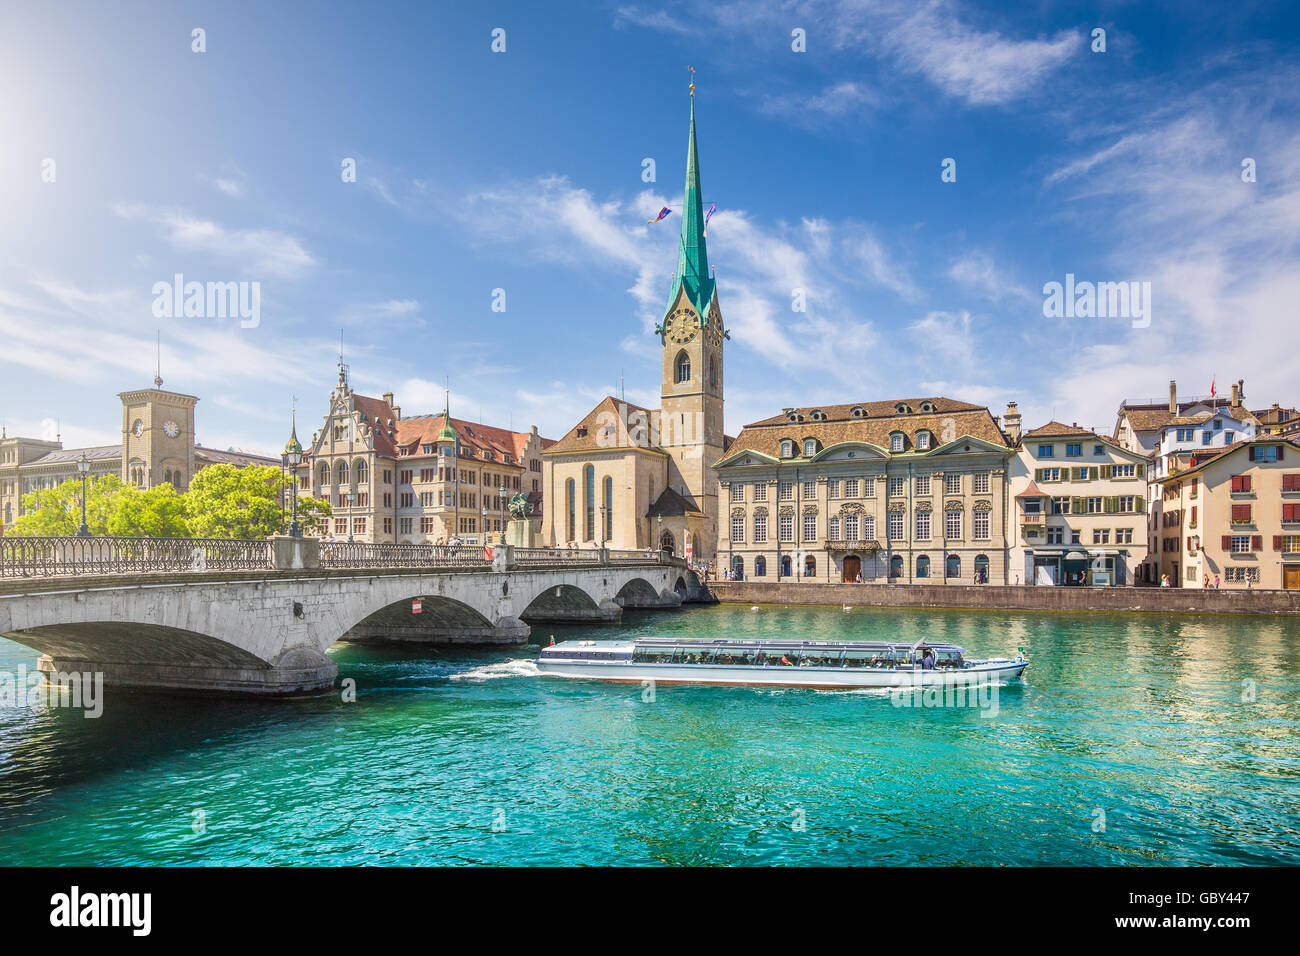 Centro storico della città di Zurigo con la famosa Chiesa di Fraumuenster e le gite in barca sul fiume Limmat, Cantone di Zurigo, Svizzera Foto Stock